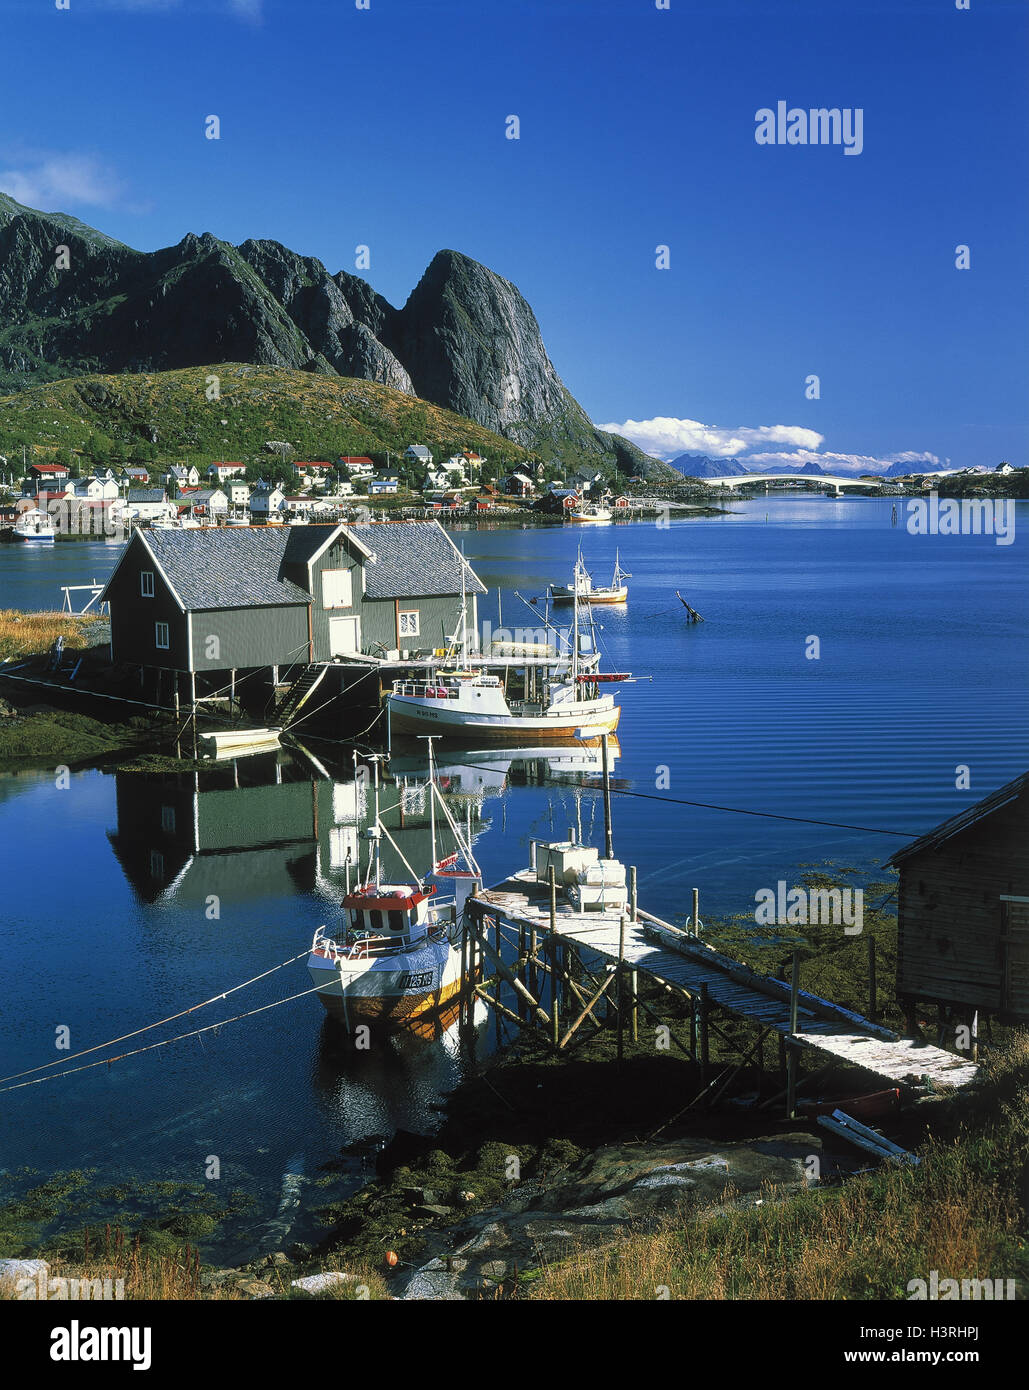 Norwegen, Lofoten, pure, lokale Ansicht, Hafen, Fischerboote, Europa, Skandinavien, Felsen, Galle Landschaft, Insel, Stiefel, Angeln, Hafen, Hafen, Brücke, Steg, Stockfoto